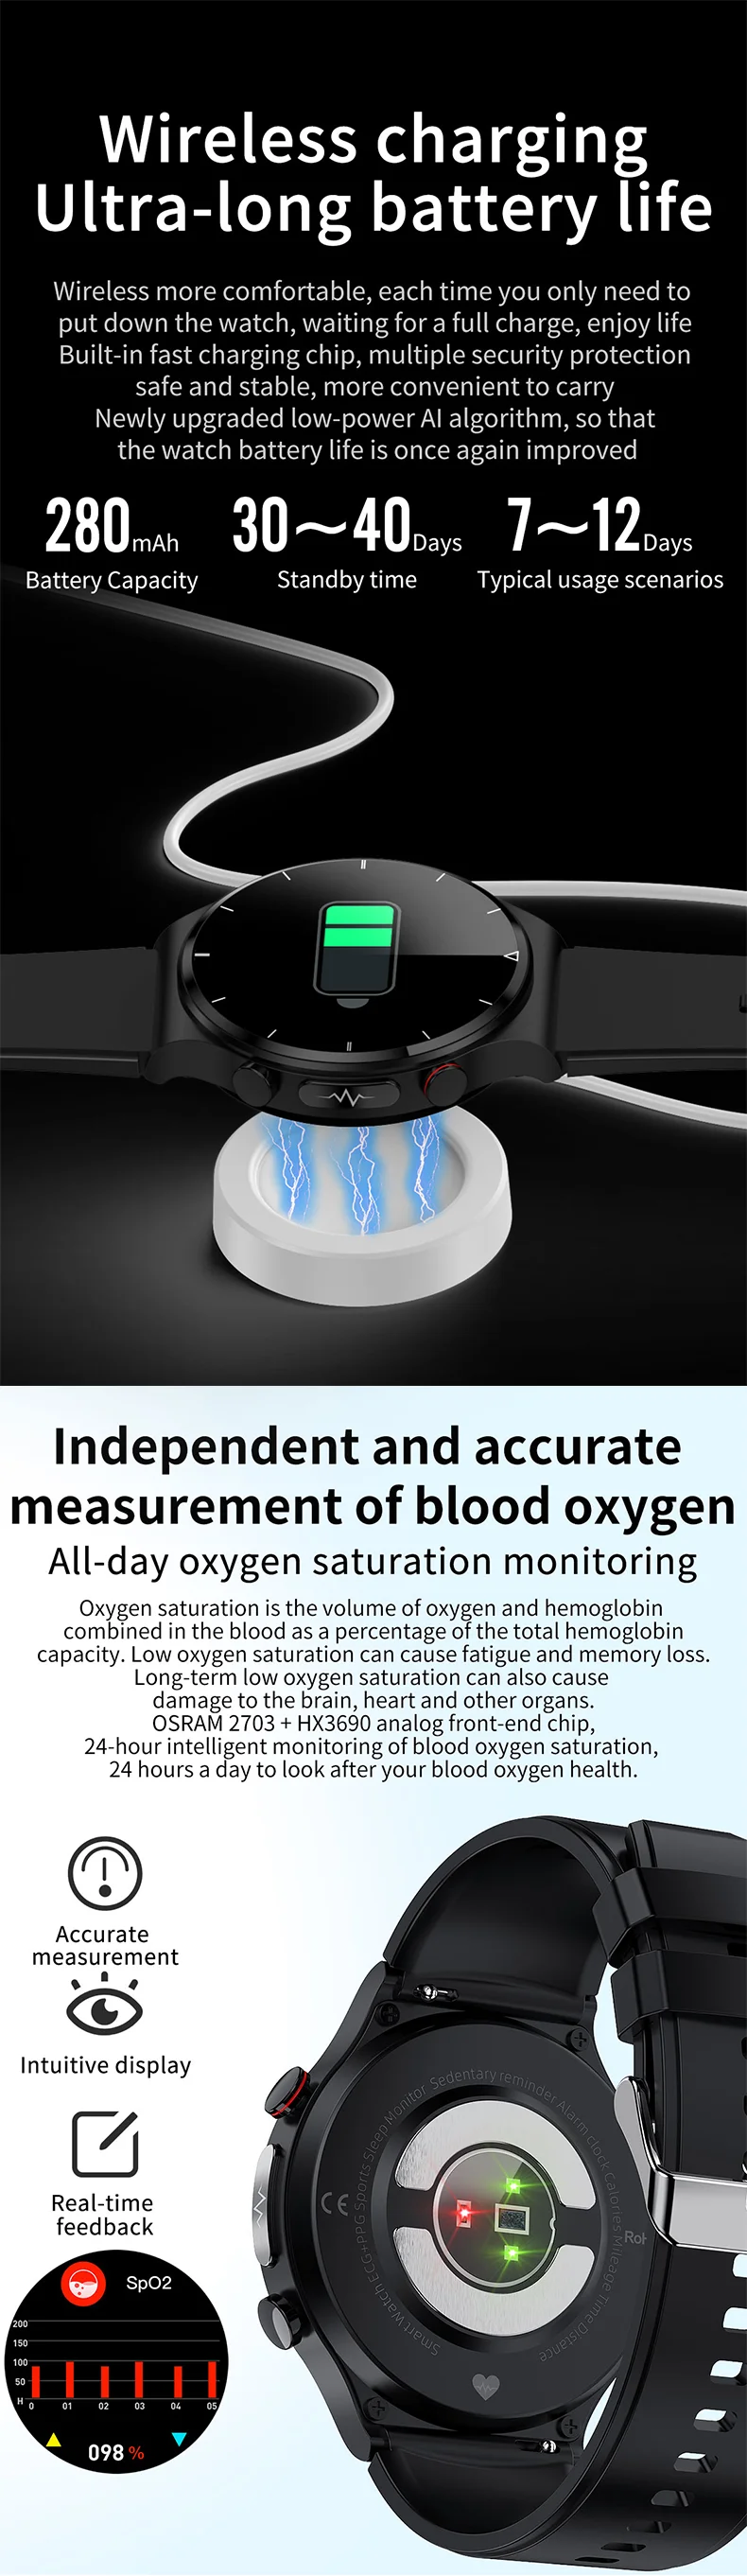 Montre intelligente ECG E88 Andriod : oxygène sanguin, température corporelle, chargement sans fil, écran HD